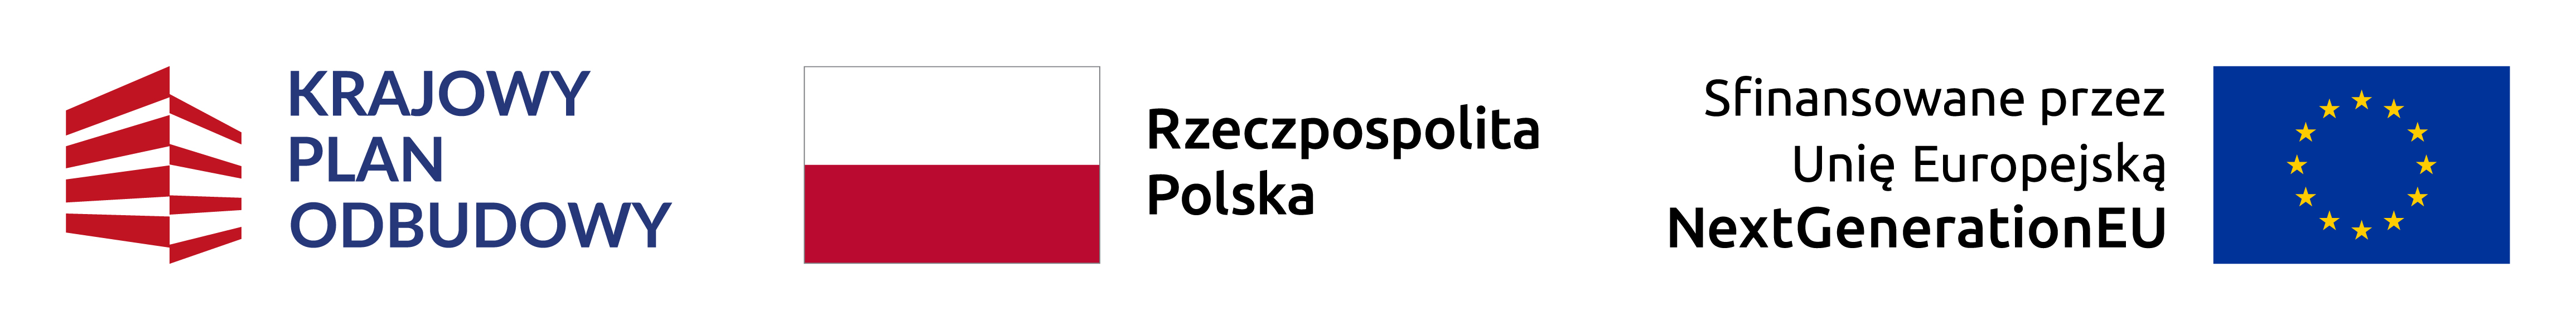 Logotypy KPO, RP i UE.